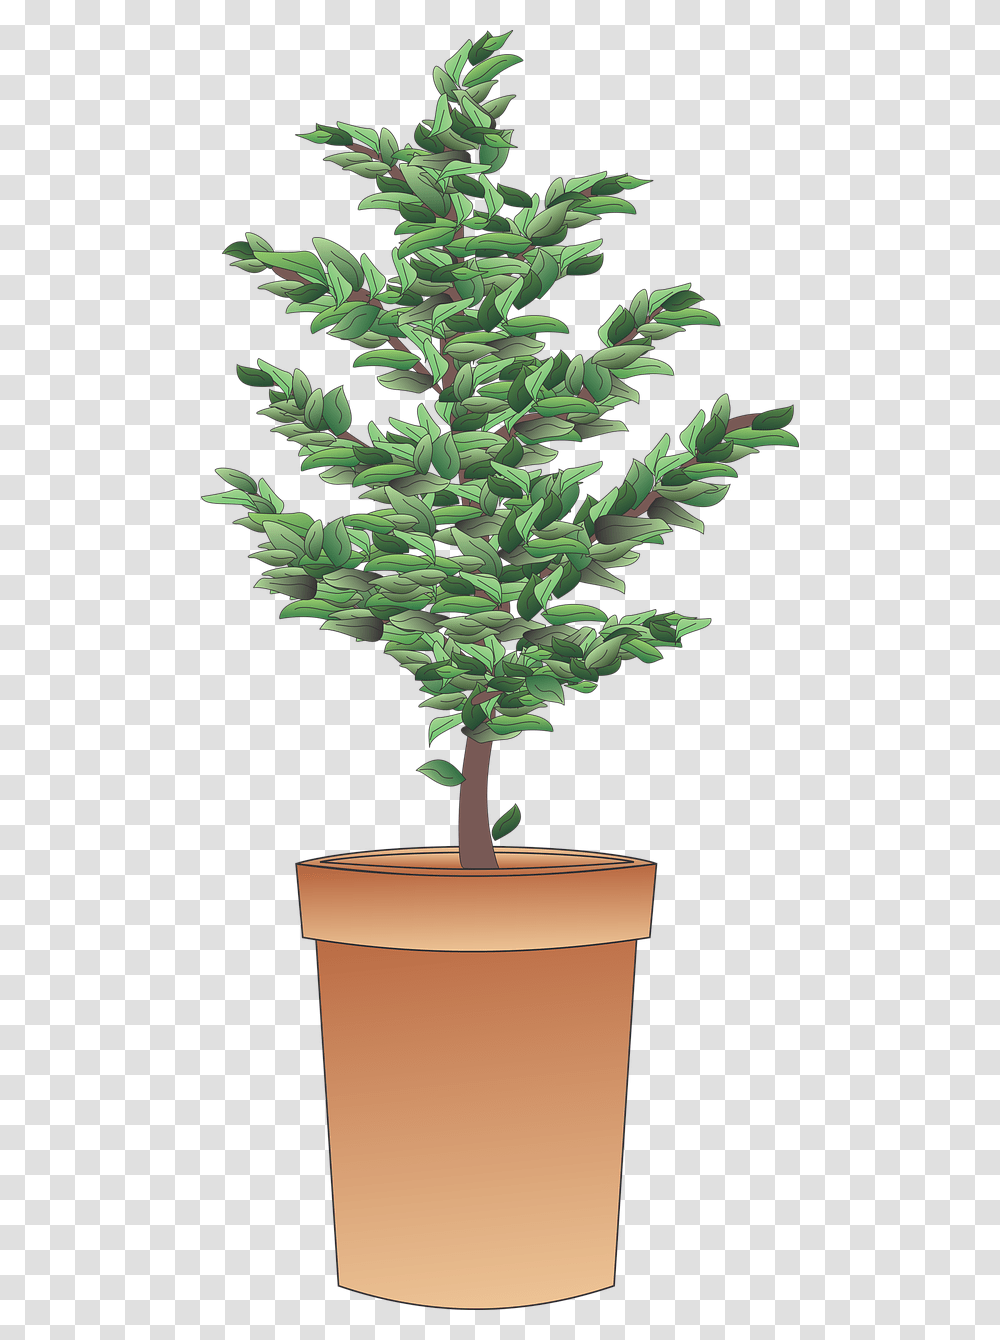 Shrub, Tree, Plant, Leaf, Palm Tree Transparent Png